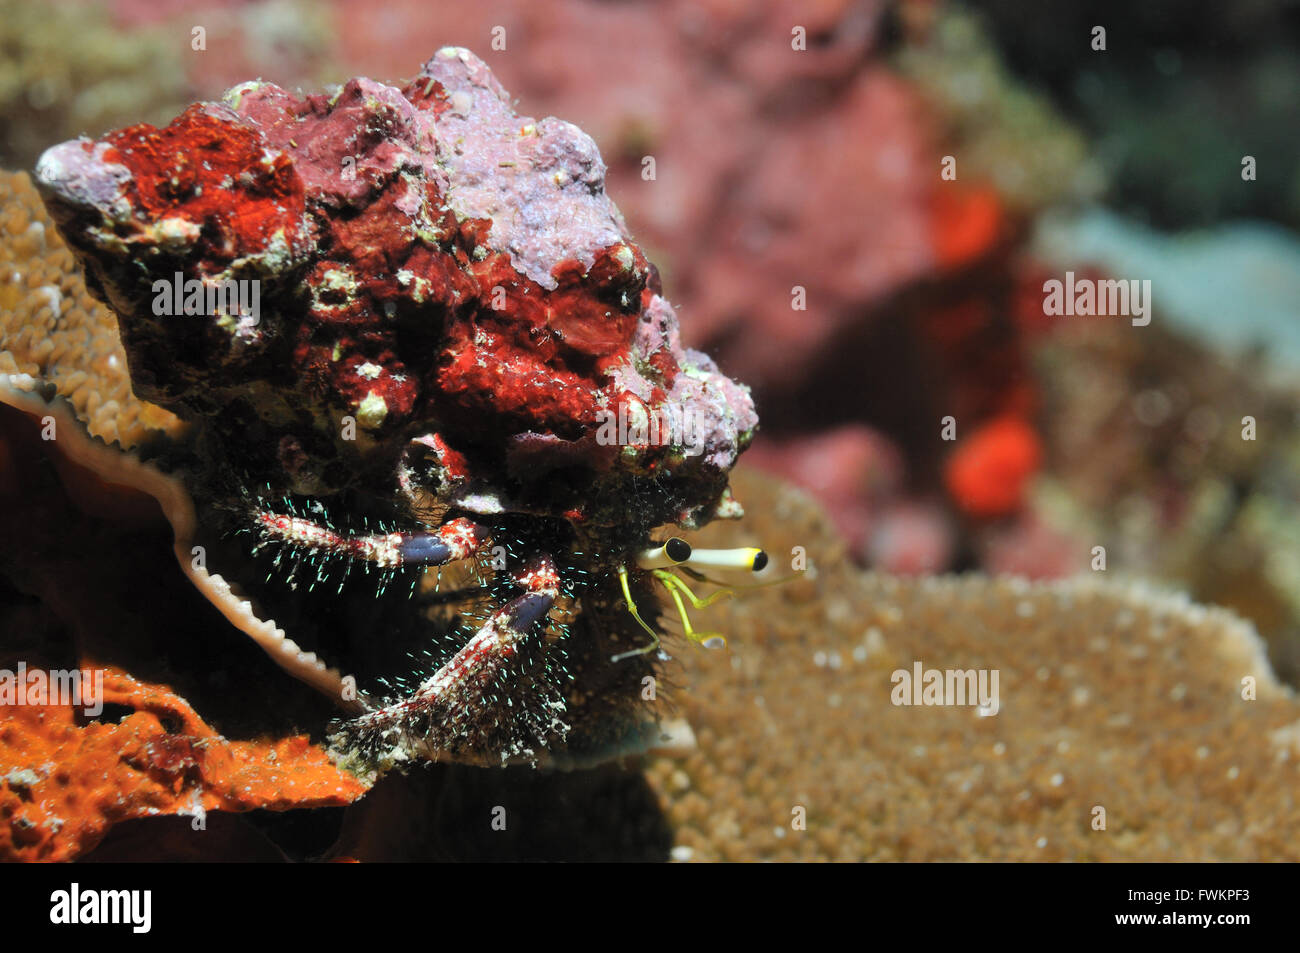 L'ermite de récif avec un shell minable sur son dos assis sur un morceau de corail, Panglao, Philippines Banque D'Images